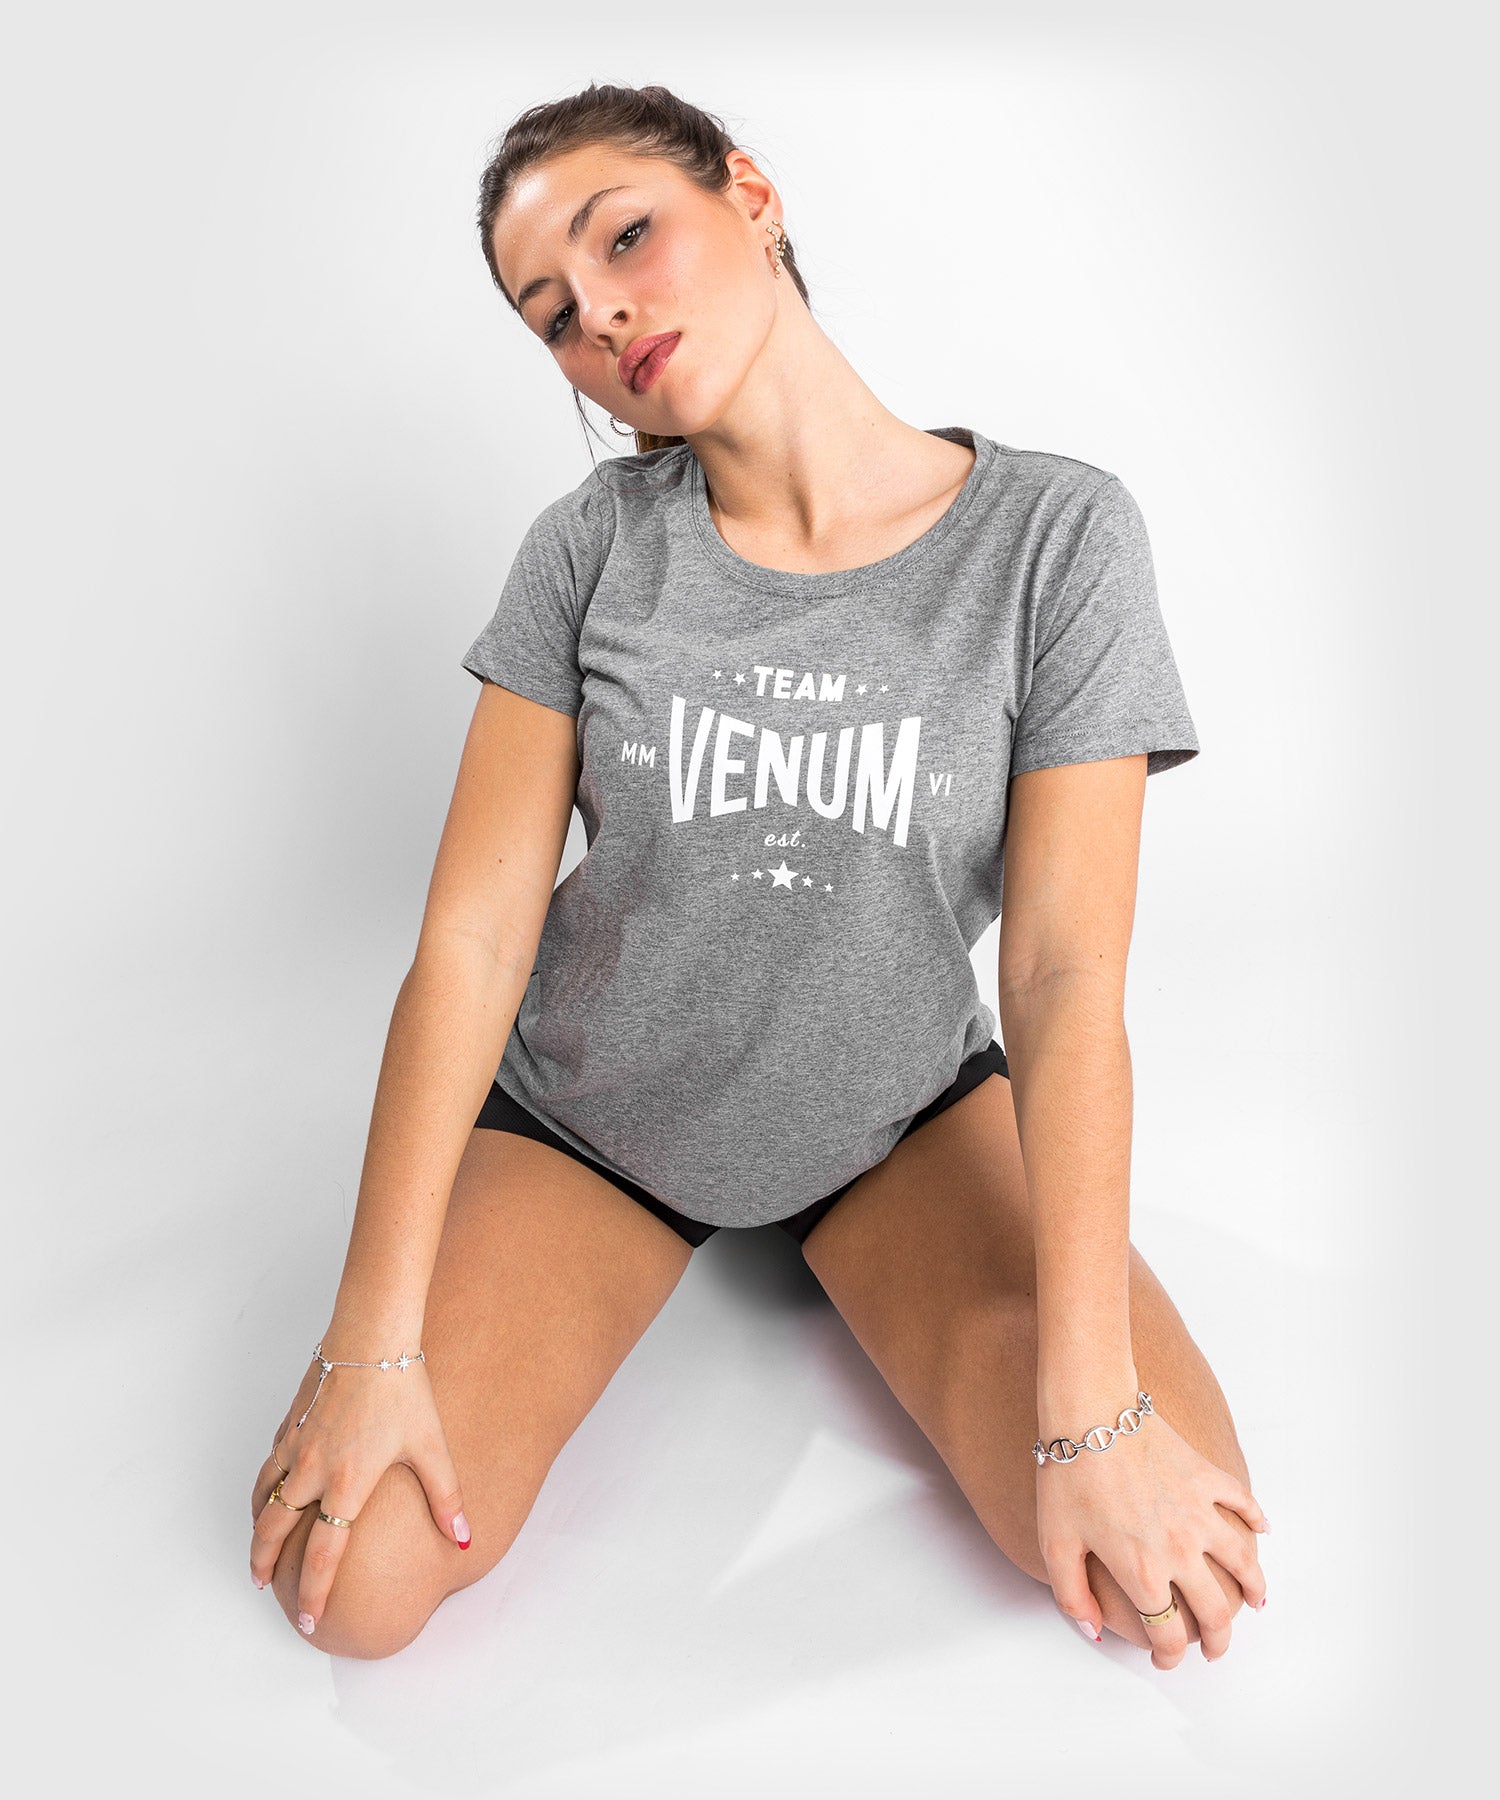 T-Shirt En Coton & Crop Top Venum Femme